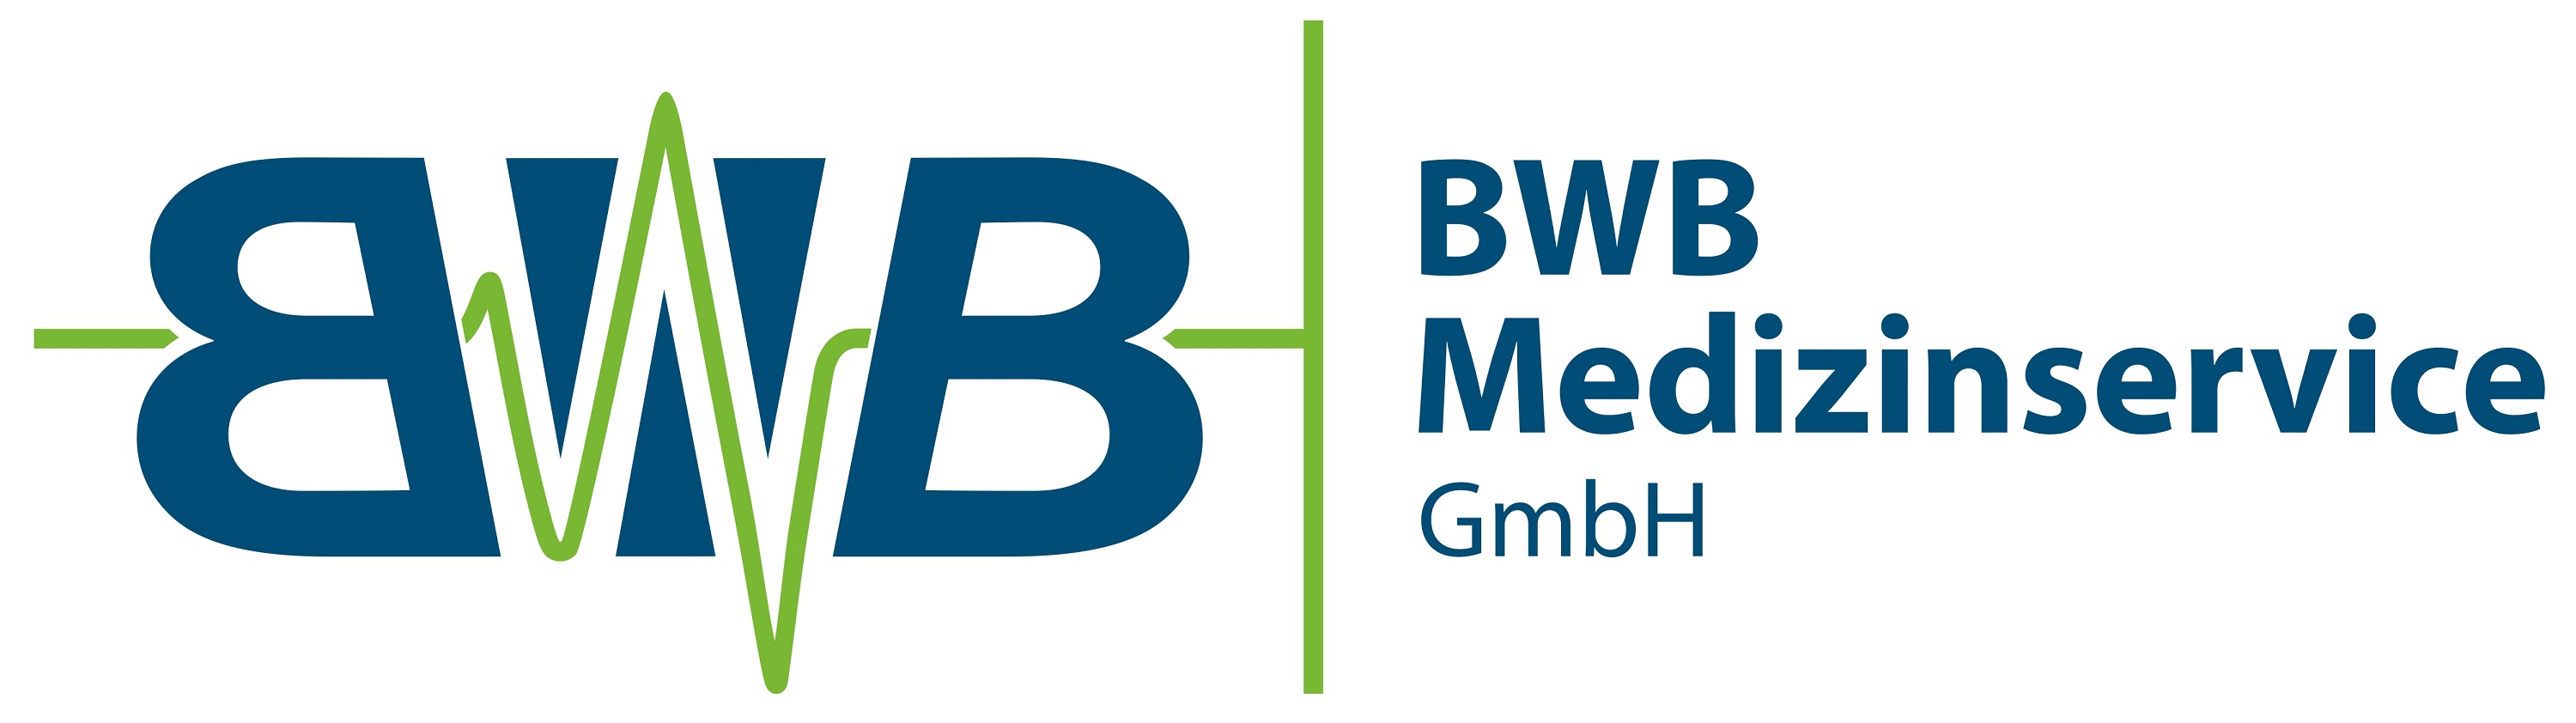 BWB Medizinservice